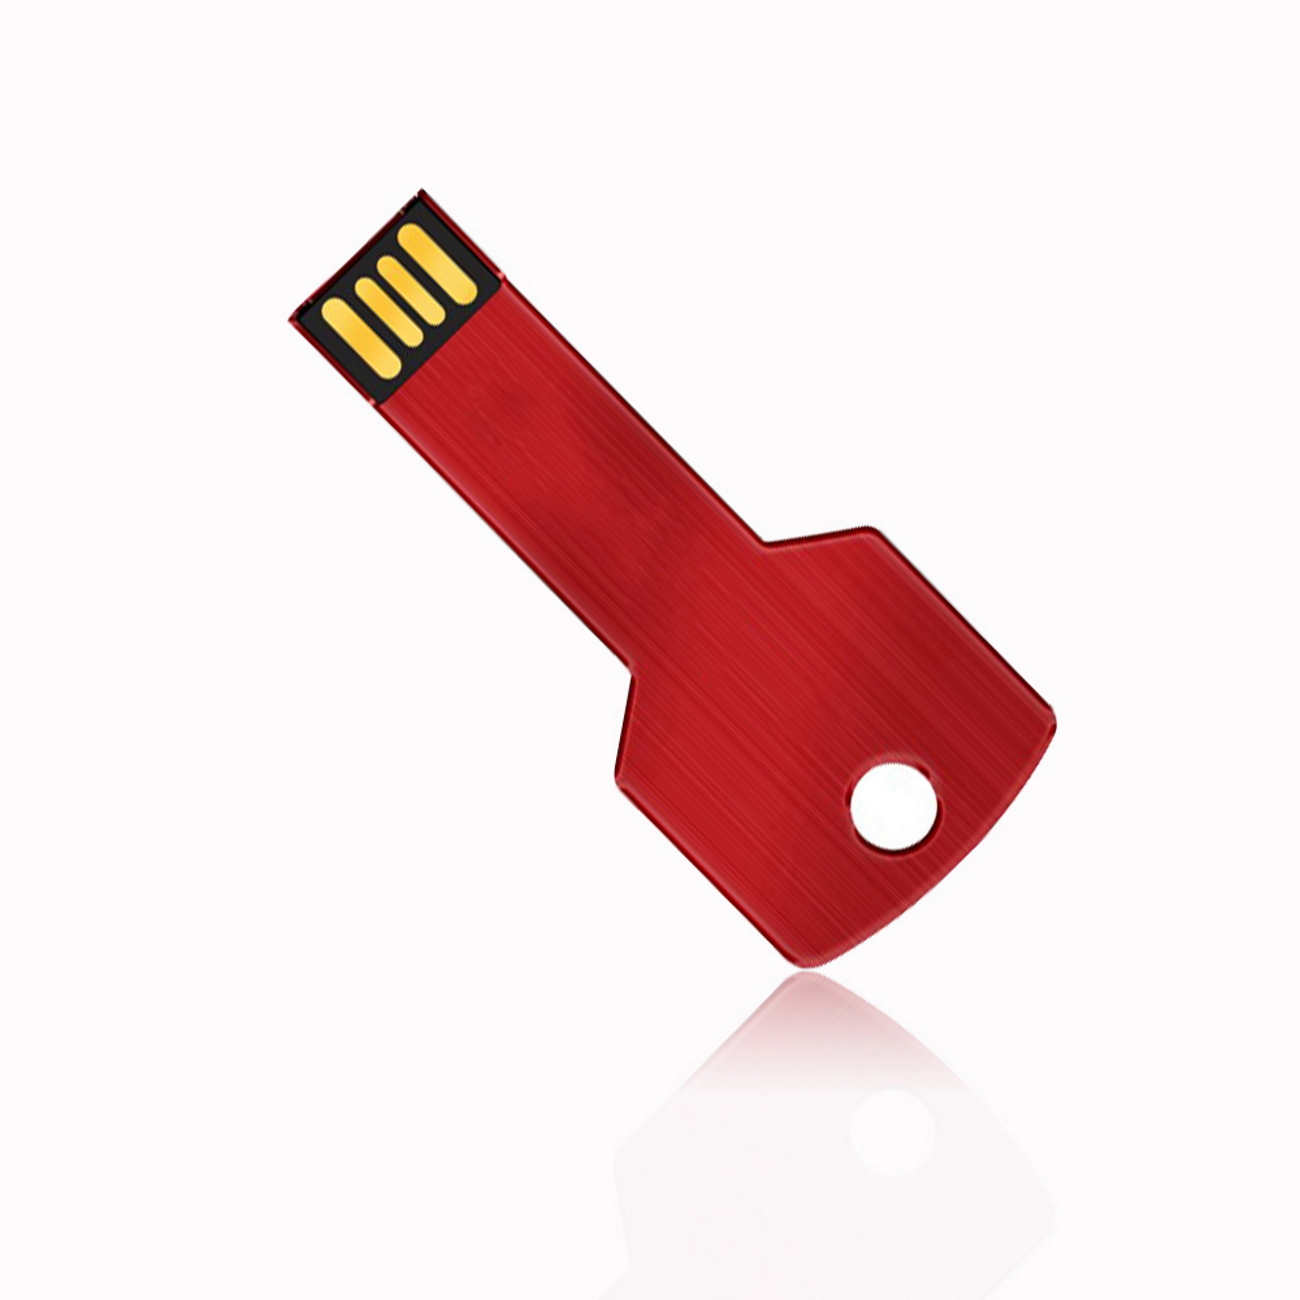 USB GERMANY Key Rot 1 GB) USB-Stick 1GB (Rot